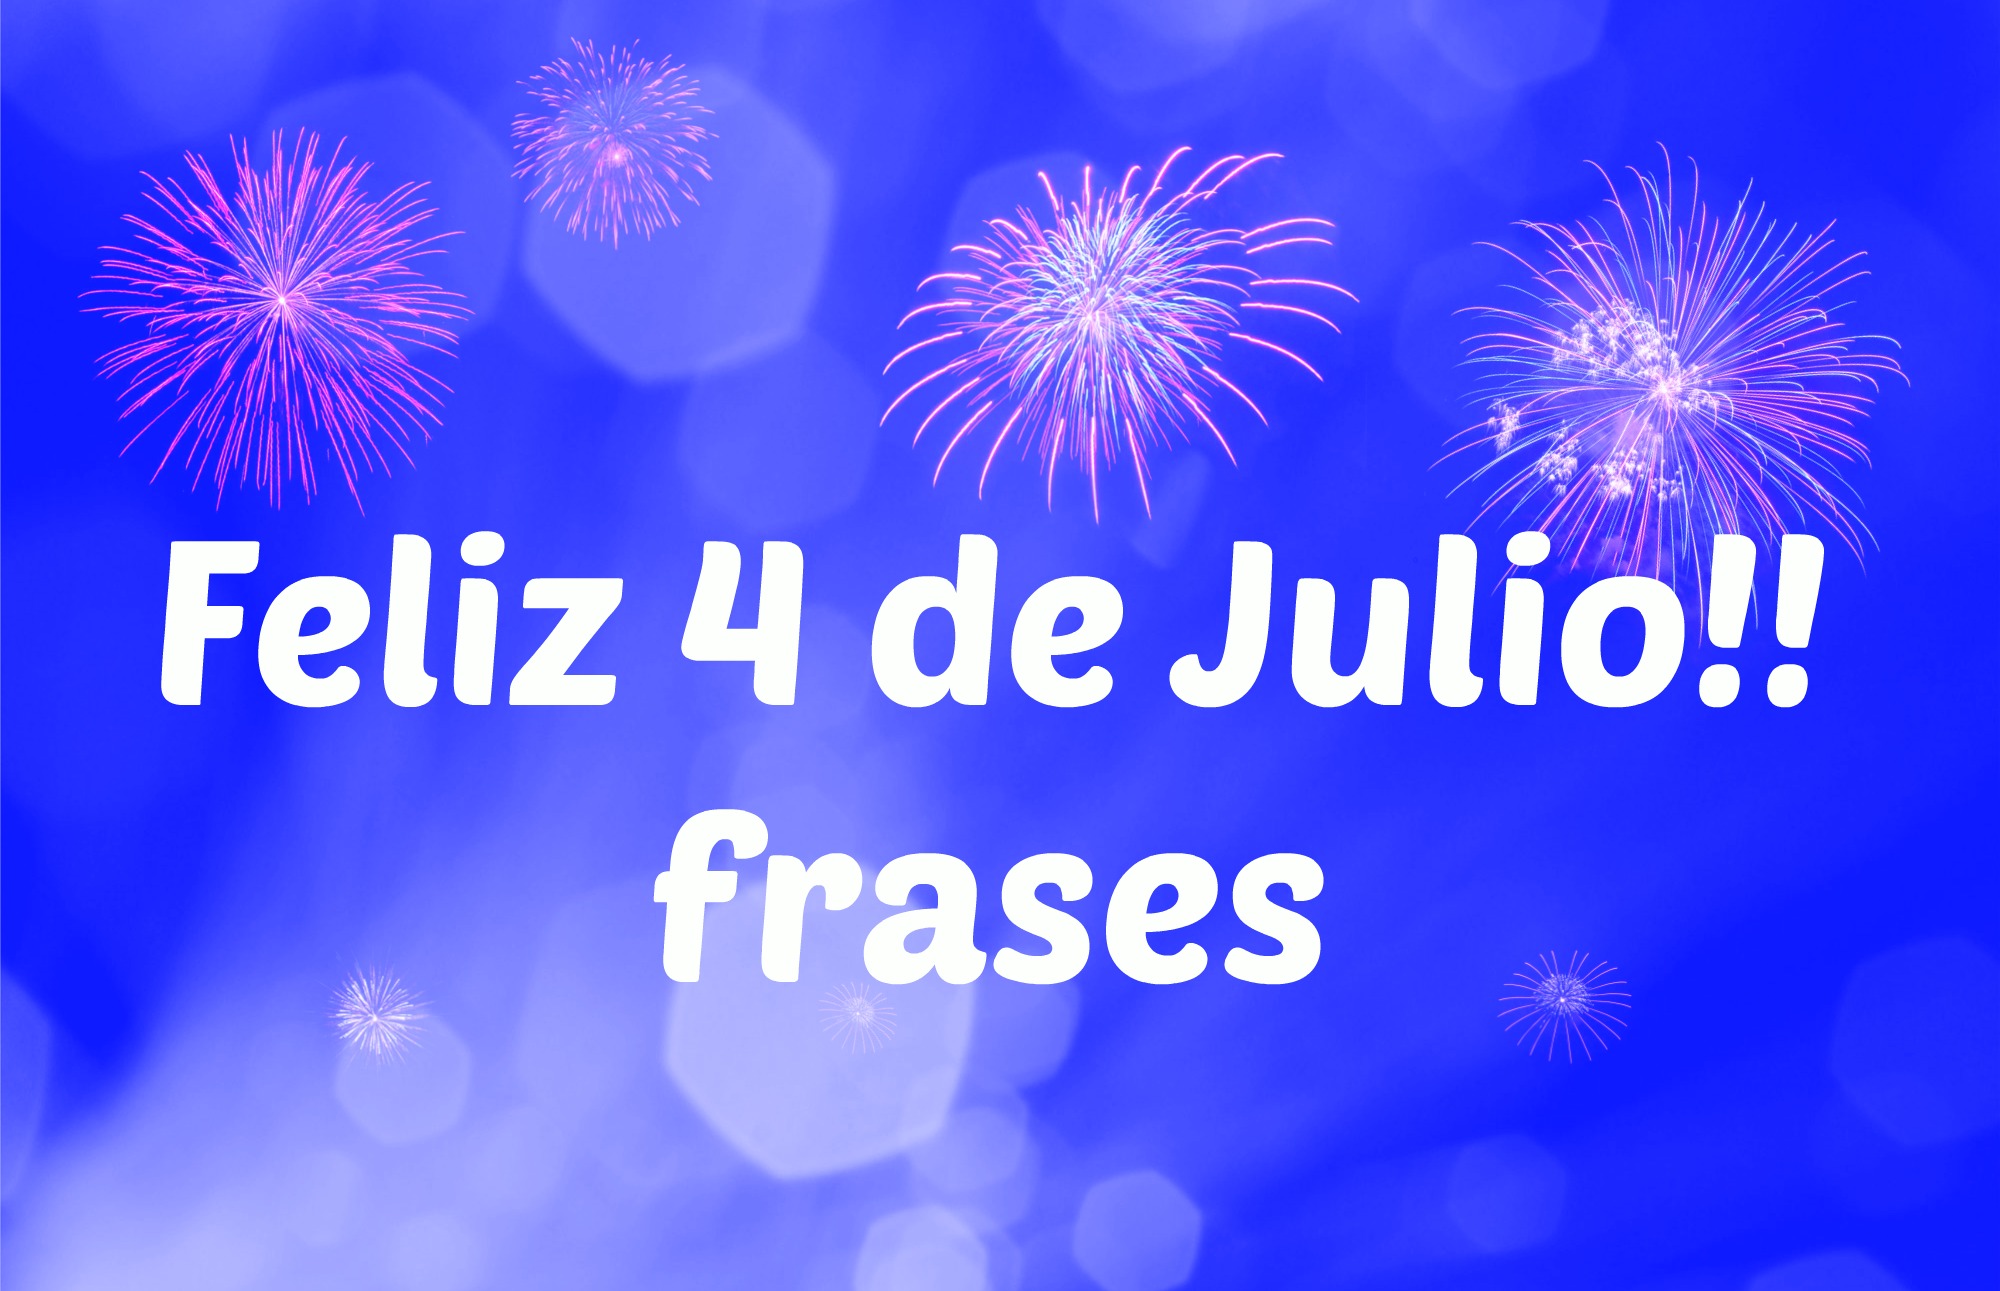 Feliz 4 de Julio 2019!: Frases para compartir en redes | AhoraMismo.com